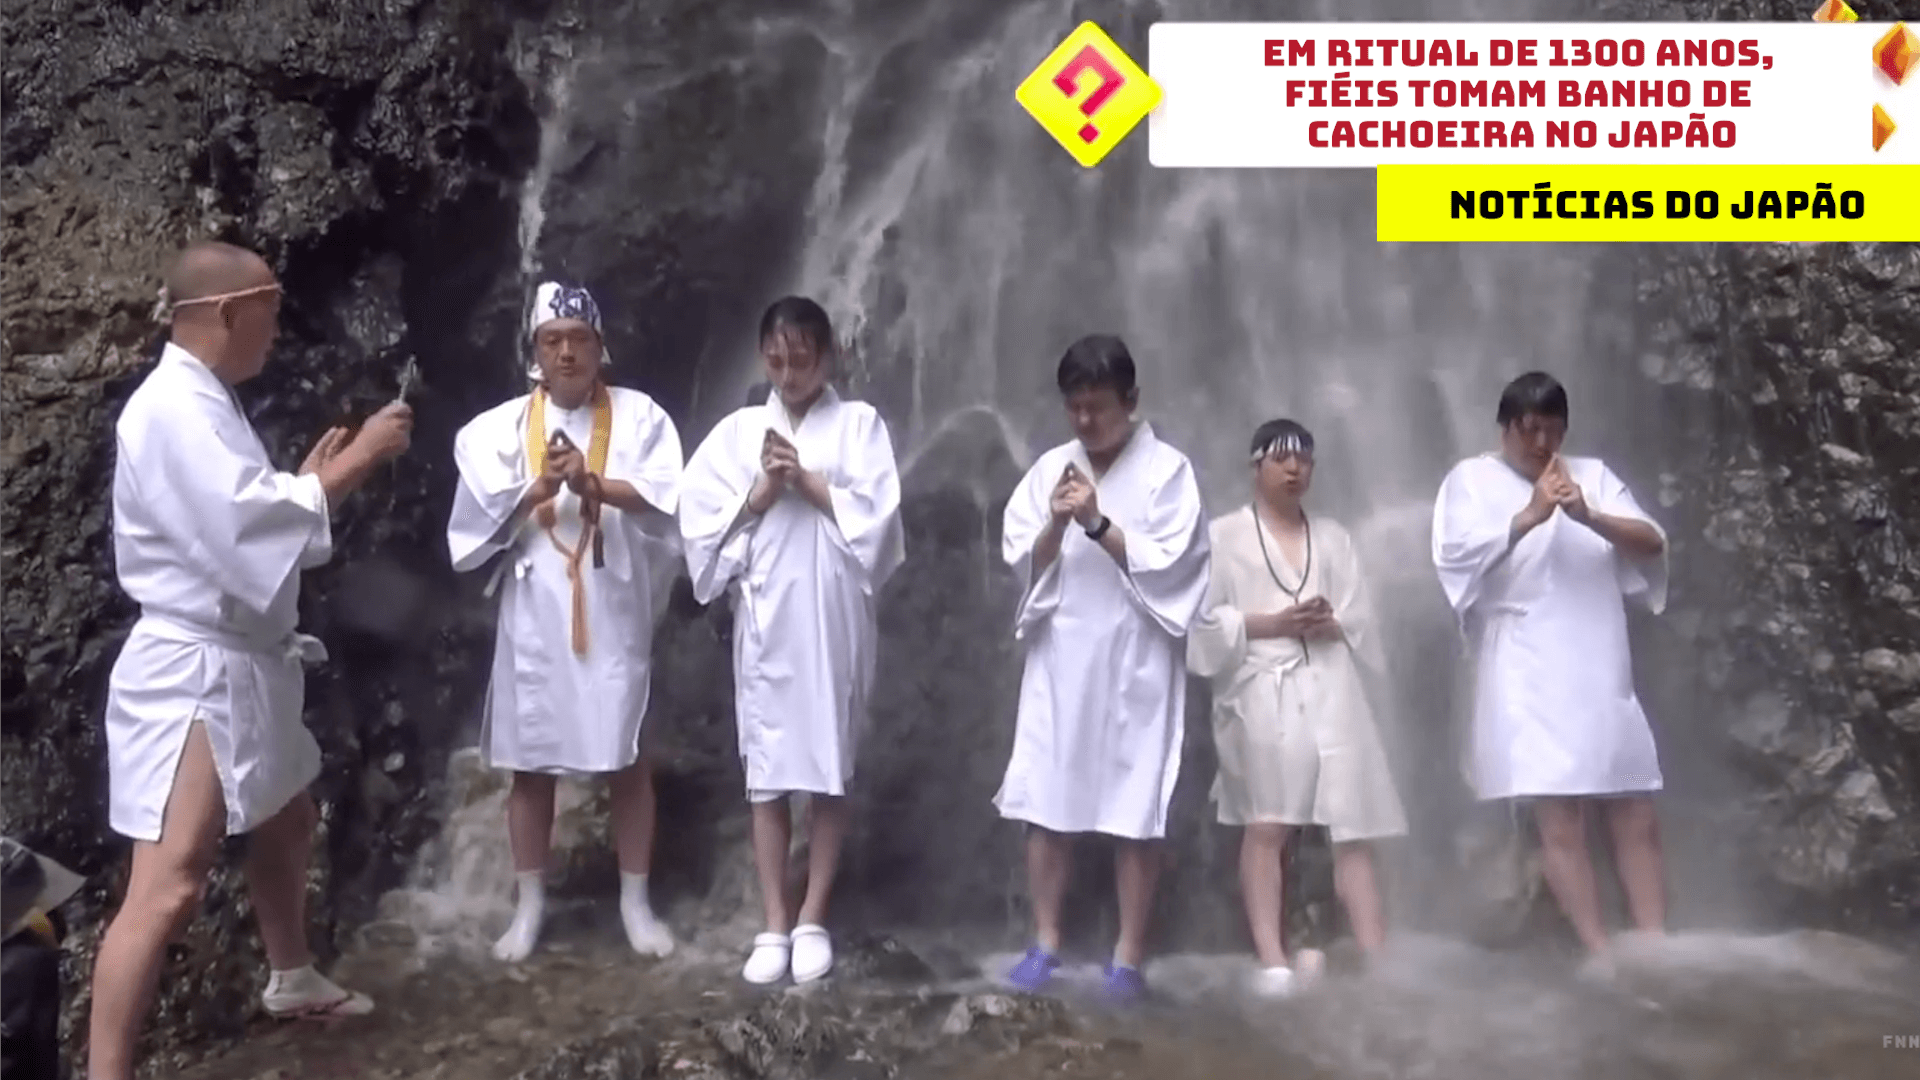 Em ritual de 1300 anos, fiéis tomam banho de cachoeira no Japão 